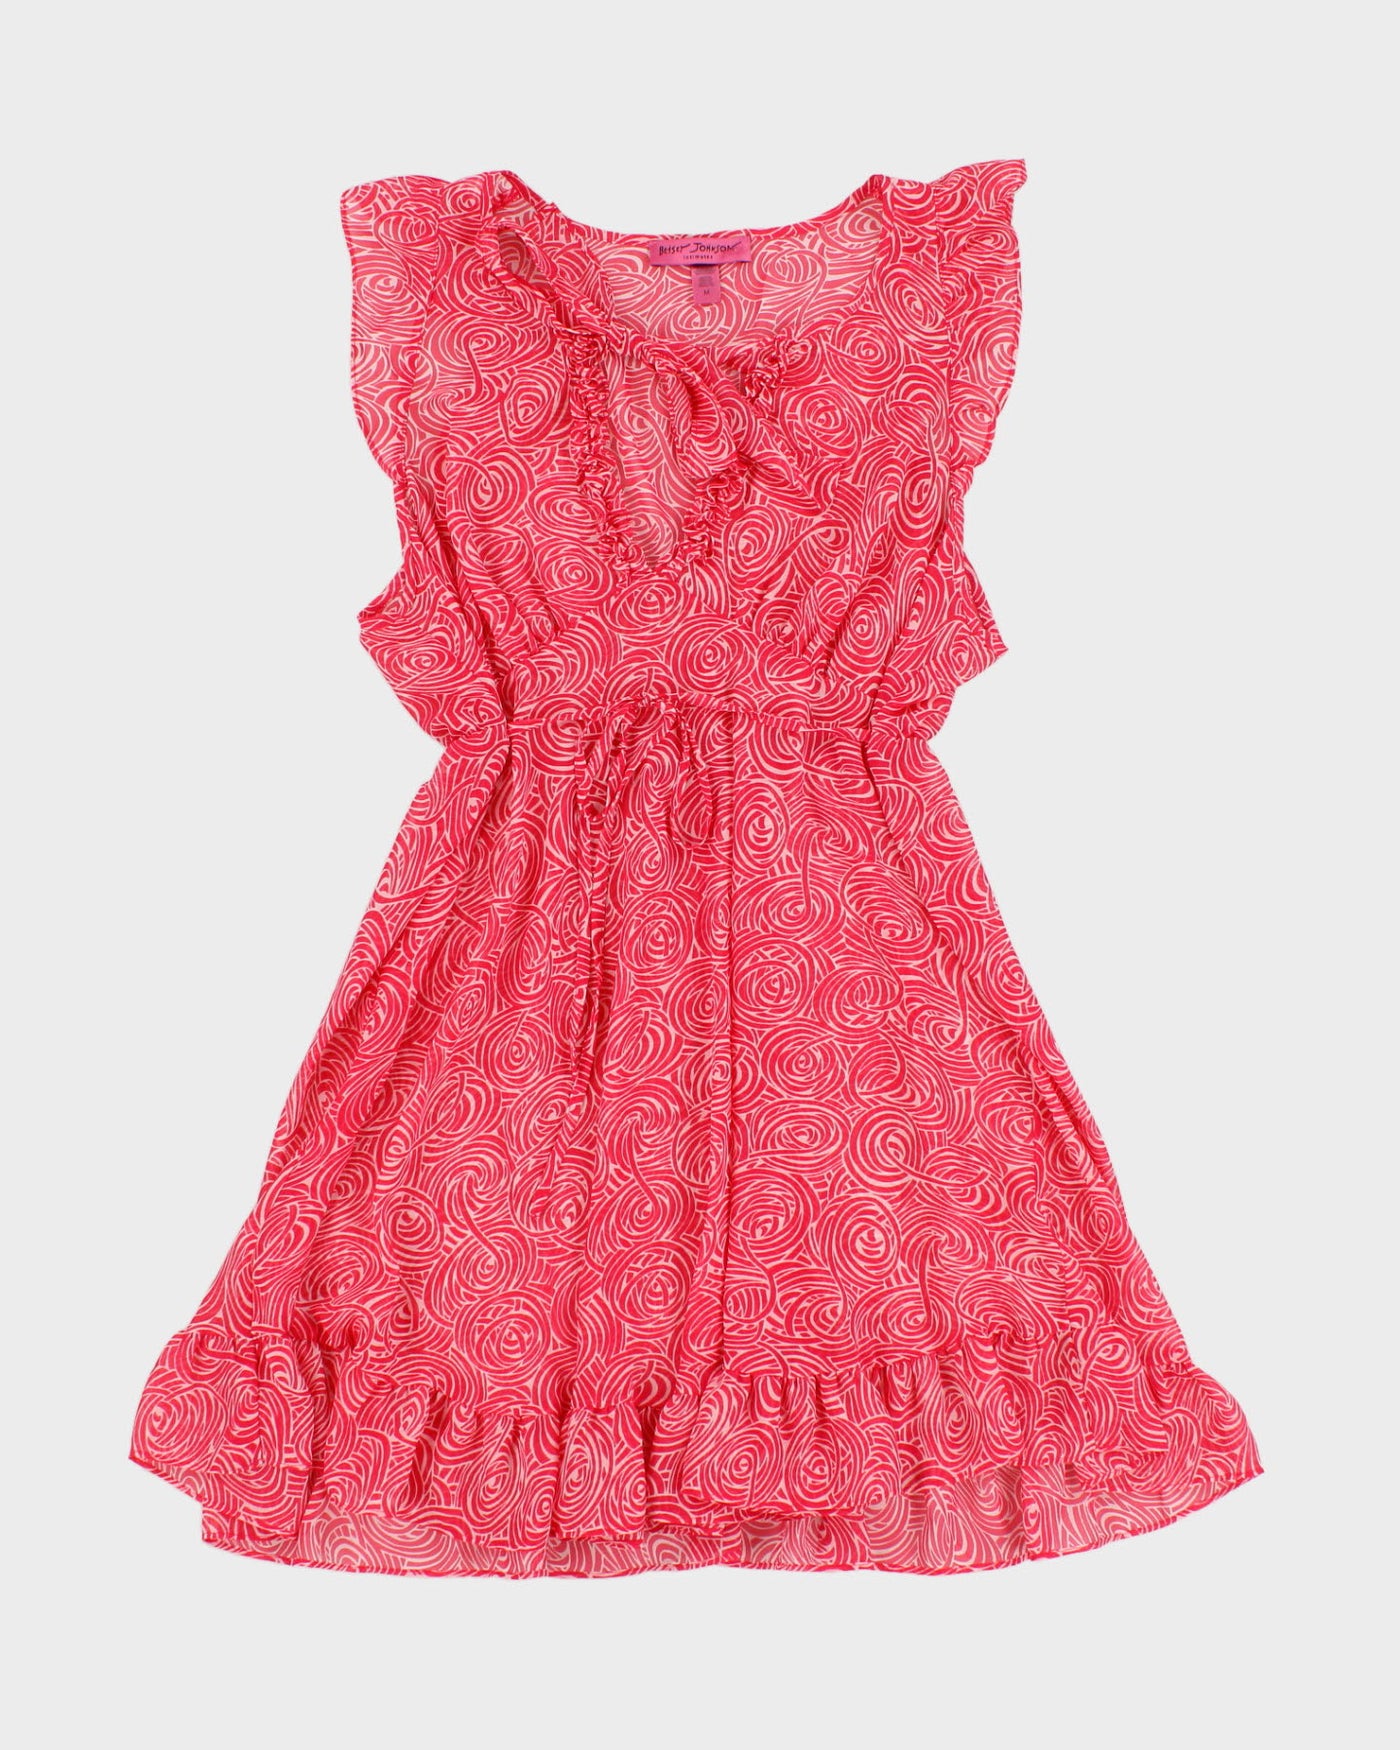 Betsey Johnson Intimates Pink & White Chiffon Nightie Dress - M